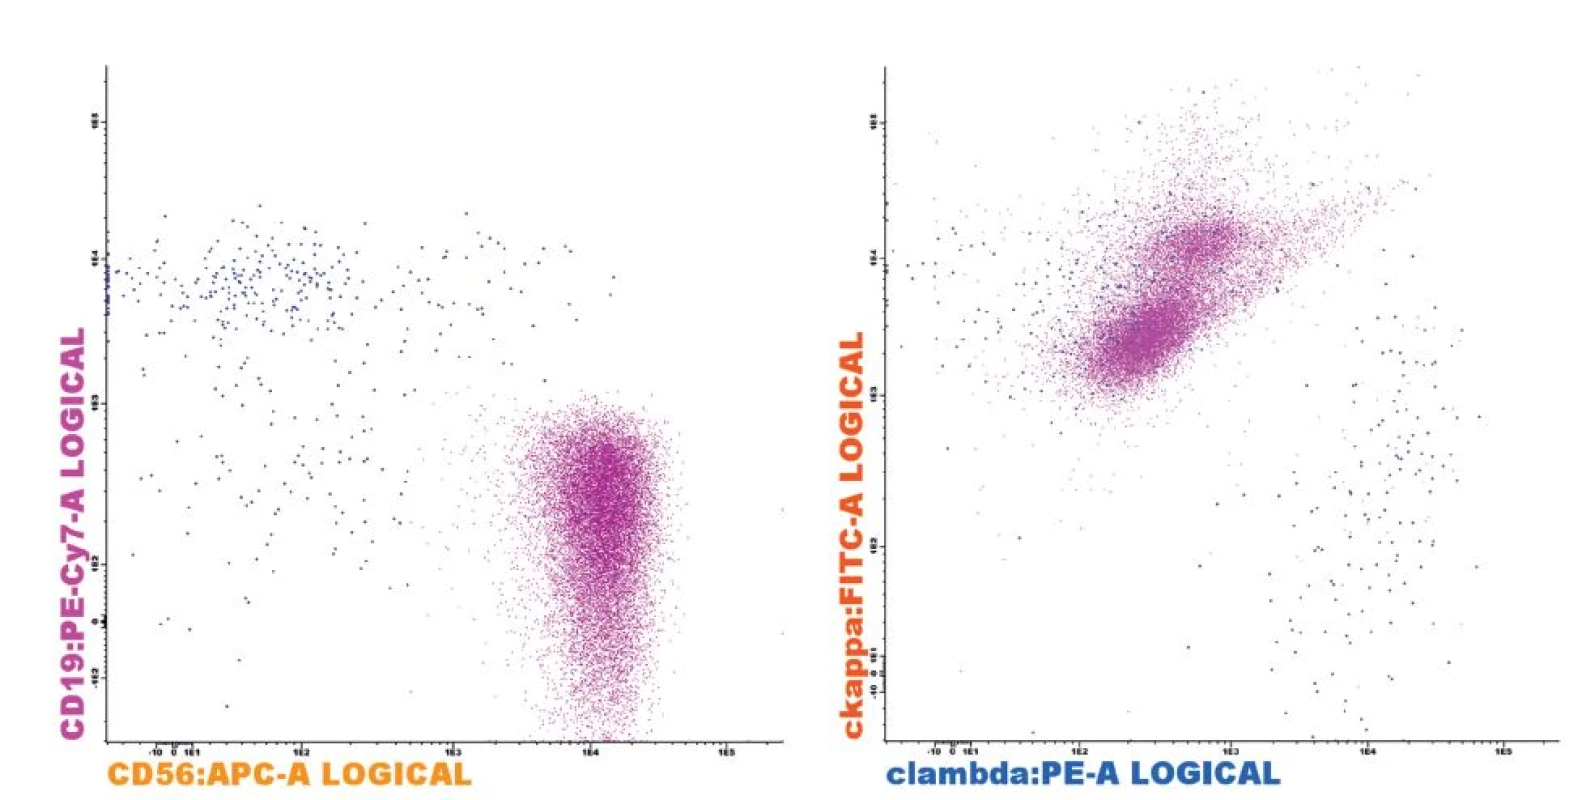 Fenotyp plazmocytů (PC) u pacienta s MM
Patologické klonální PC (fialová) s typickým fenotypem CD19-CD56+ (A) a restrikcí cytoplazmatického lehkého imunoglobulinového řetězce kappa (B). Reziduální fyziologické PC (modrá) bez exprese CD56 (A) a normálním poměrem exprese lehkých řetězců kappa/lambda (B). Analýza provedena na flowcytometru FACSCantoII s využitím akvizičního software Diva 6.0 (Becton Dickinson) a analyzačního software Infinicyt 1.6 (Cytognos).